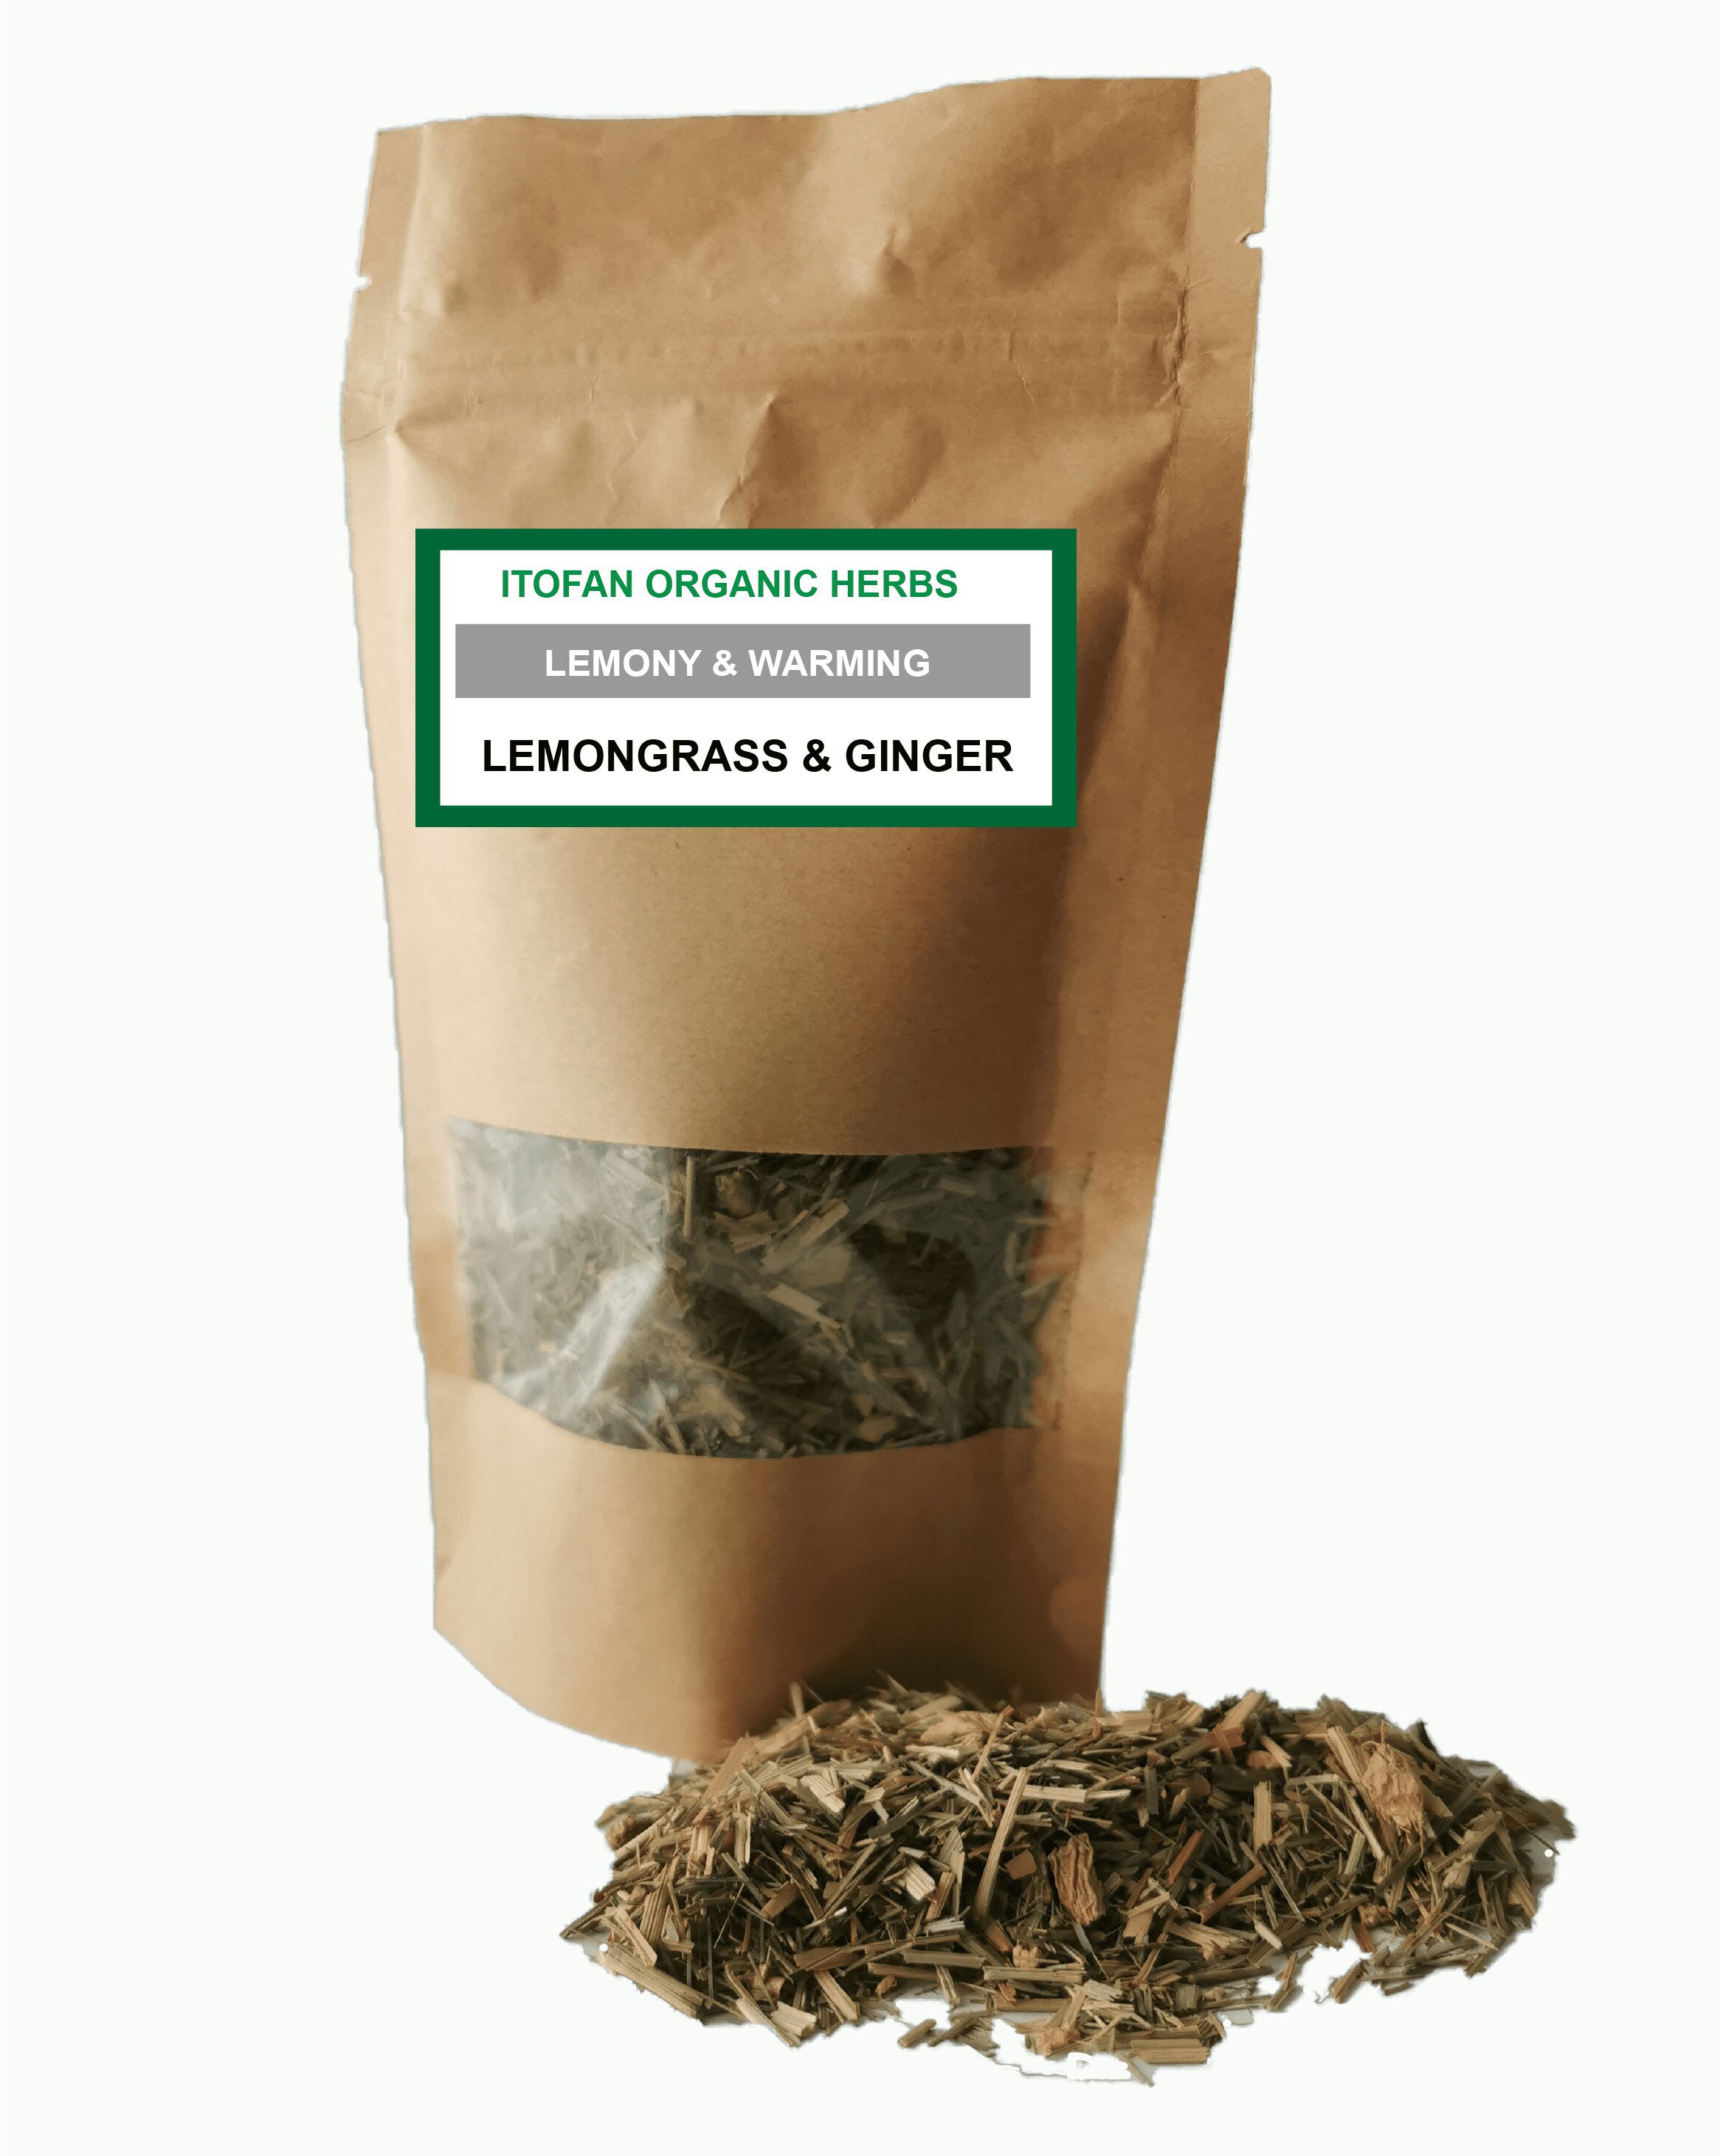 Lemongrass & Ginger Traditional Herbal Blend